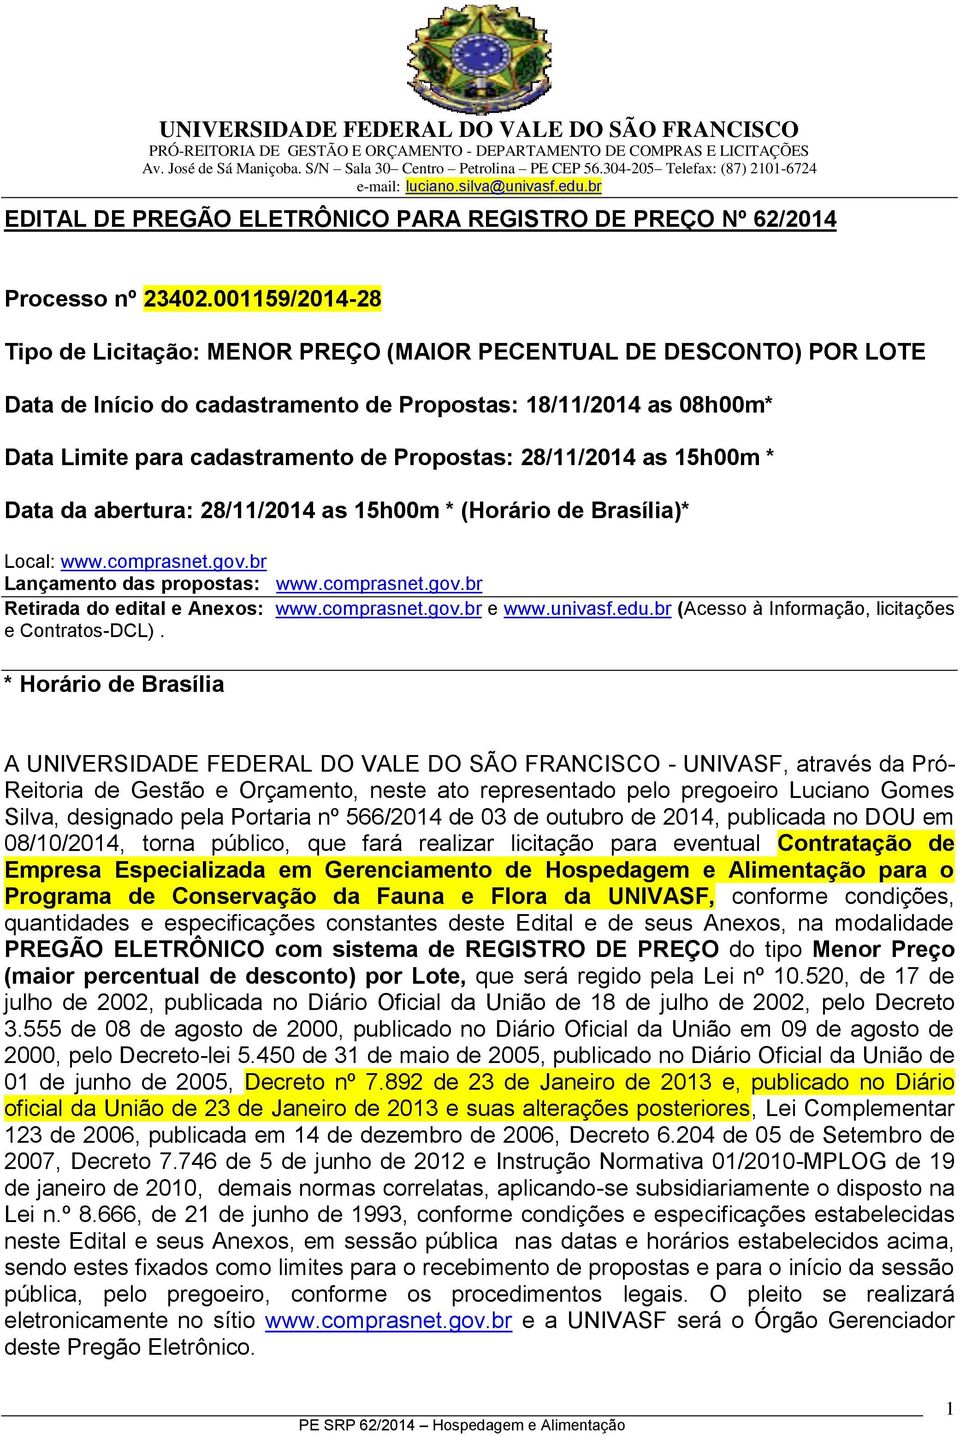 28/11/2014 as 15h00m * Data da abertura: 28/11/2014 as 15h00m * (Horário de Brasília)* Local: www.comprasnet.gov.br Lançamento das propostas: www.comprasnet.gov.br Retirada do edital e Anexos: www.